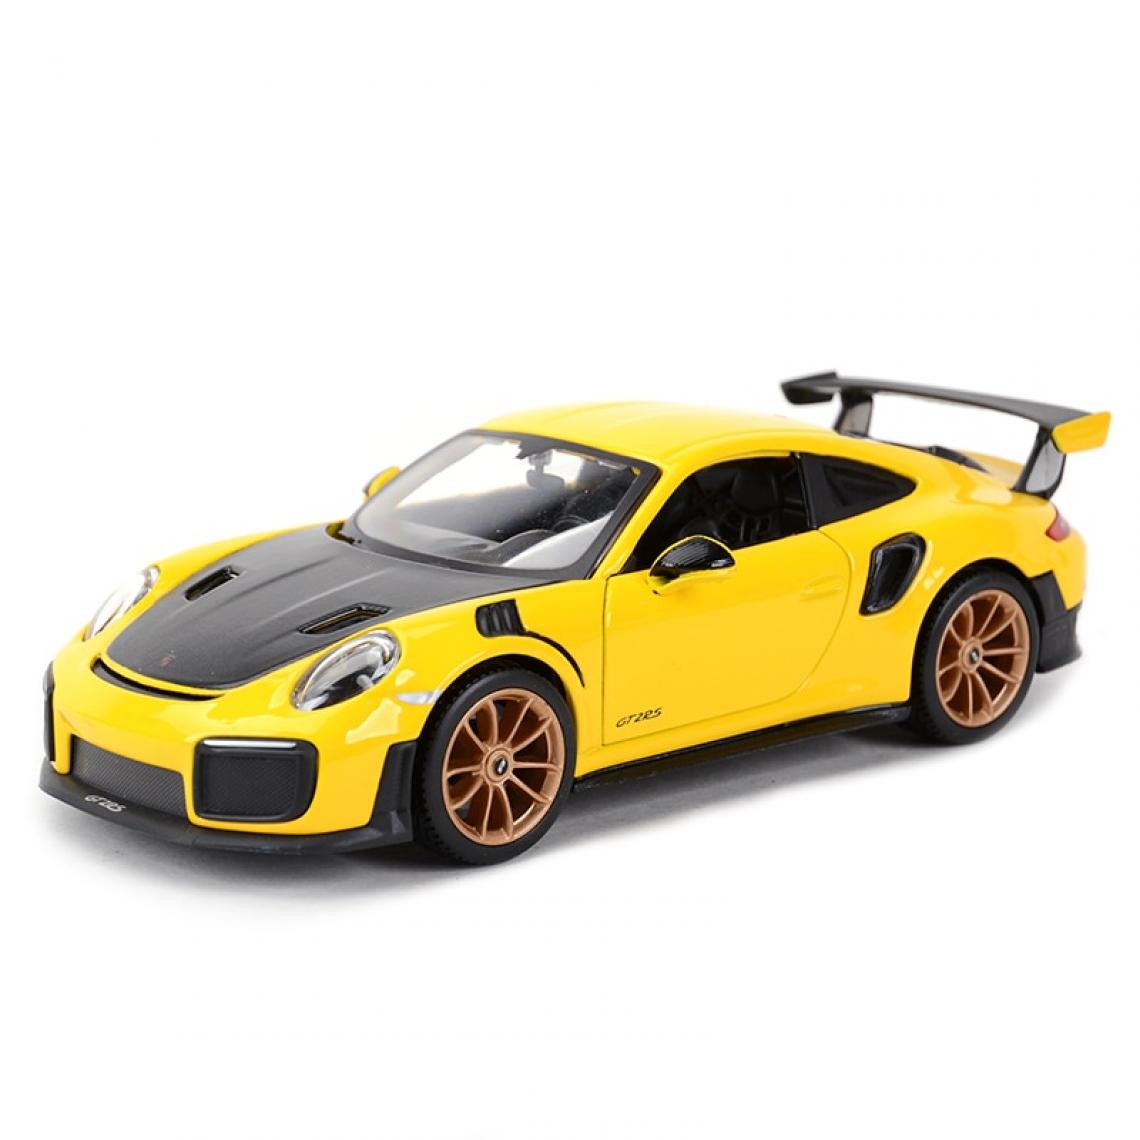 Universal - 1: 24 Porsche 911 GT2 RS Coupé statique Modèle collectible Voiture jouet | Voiture jouet moulée sous pression (jaune) - Voitures